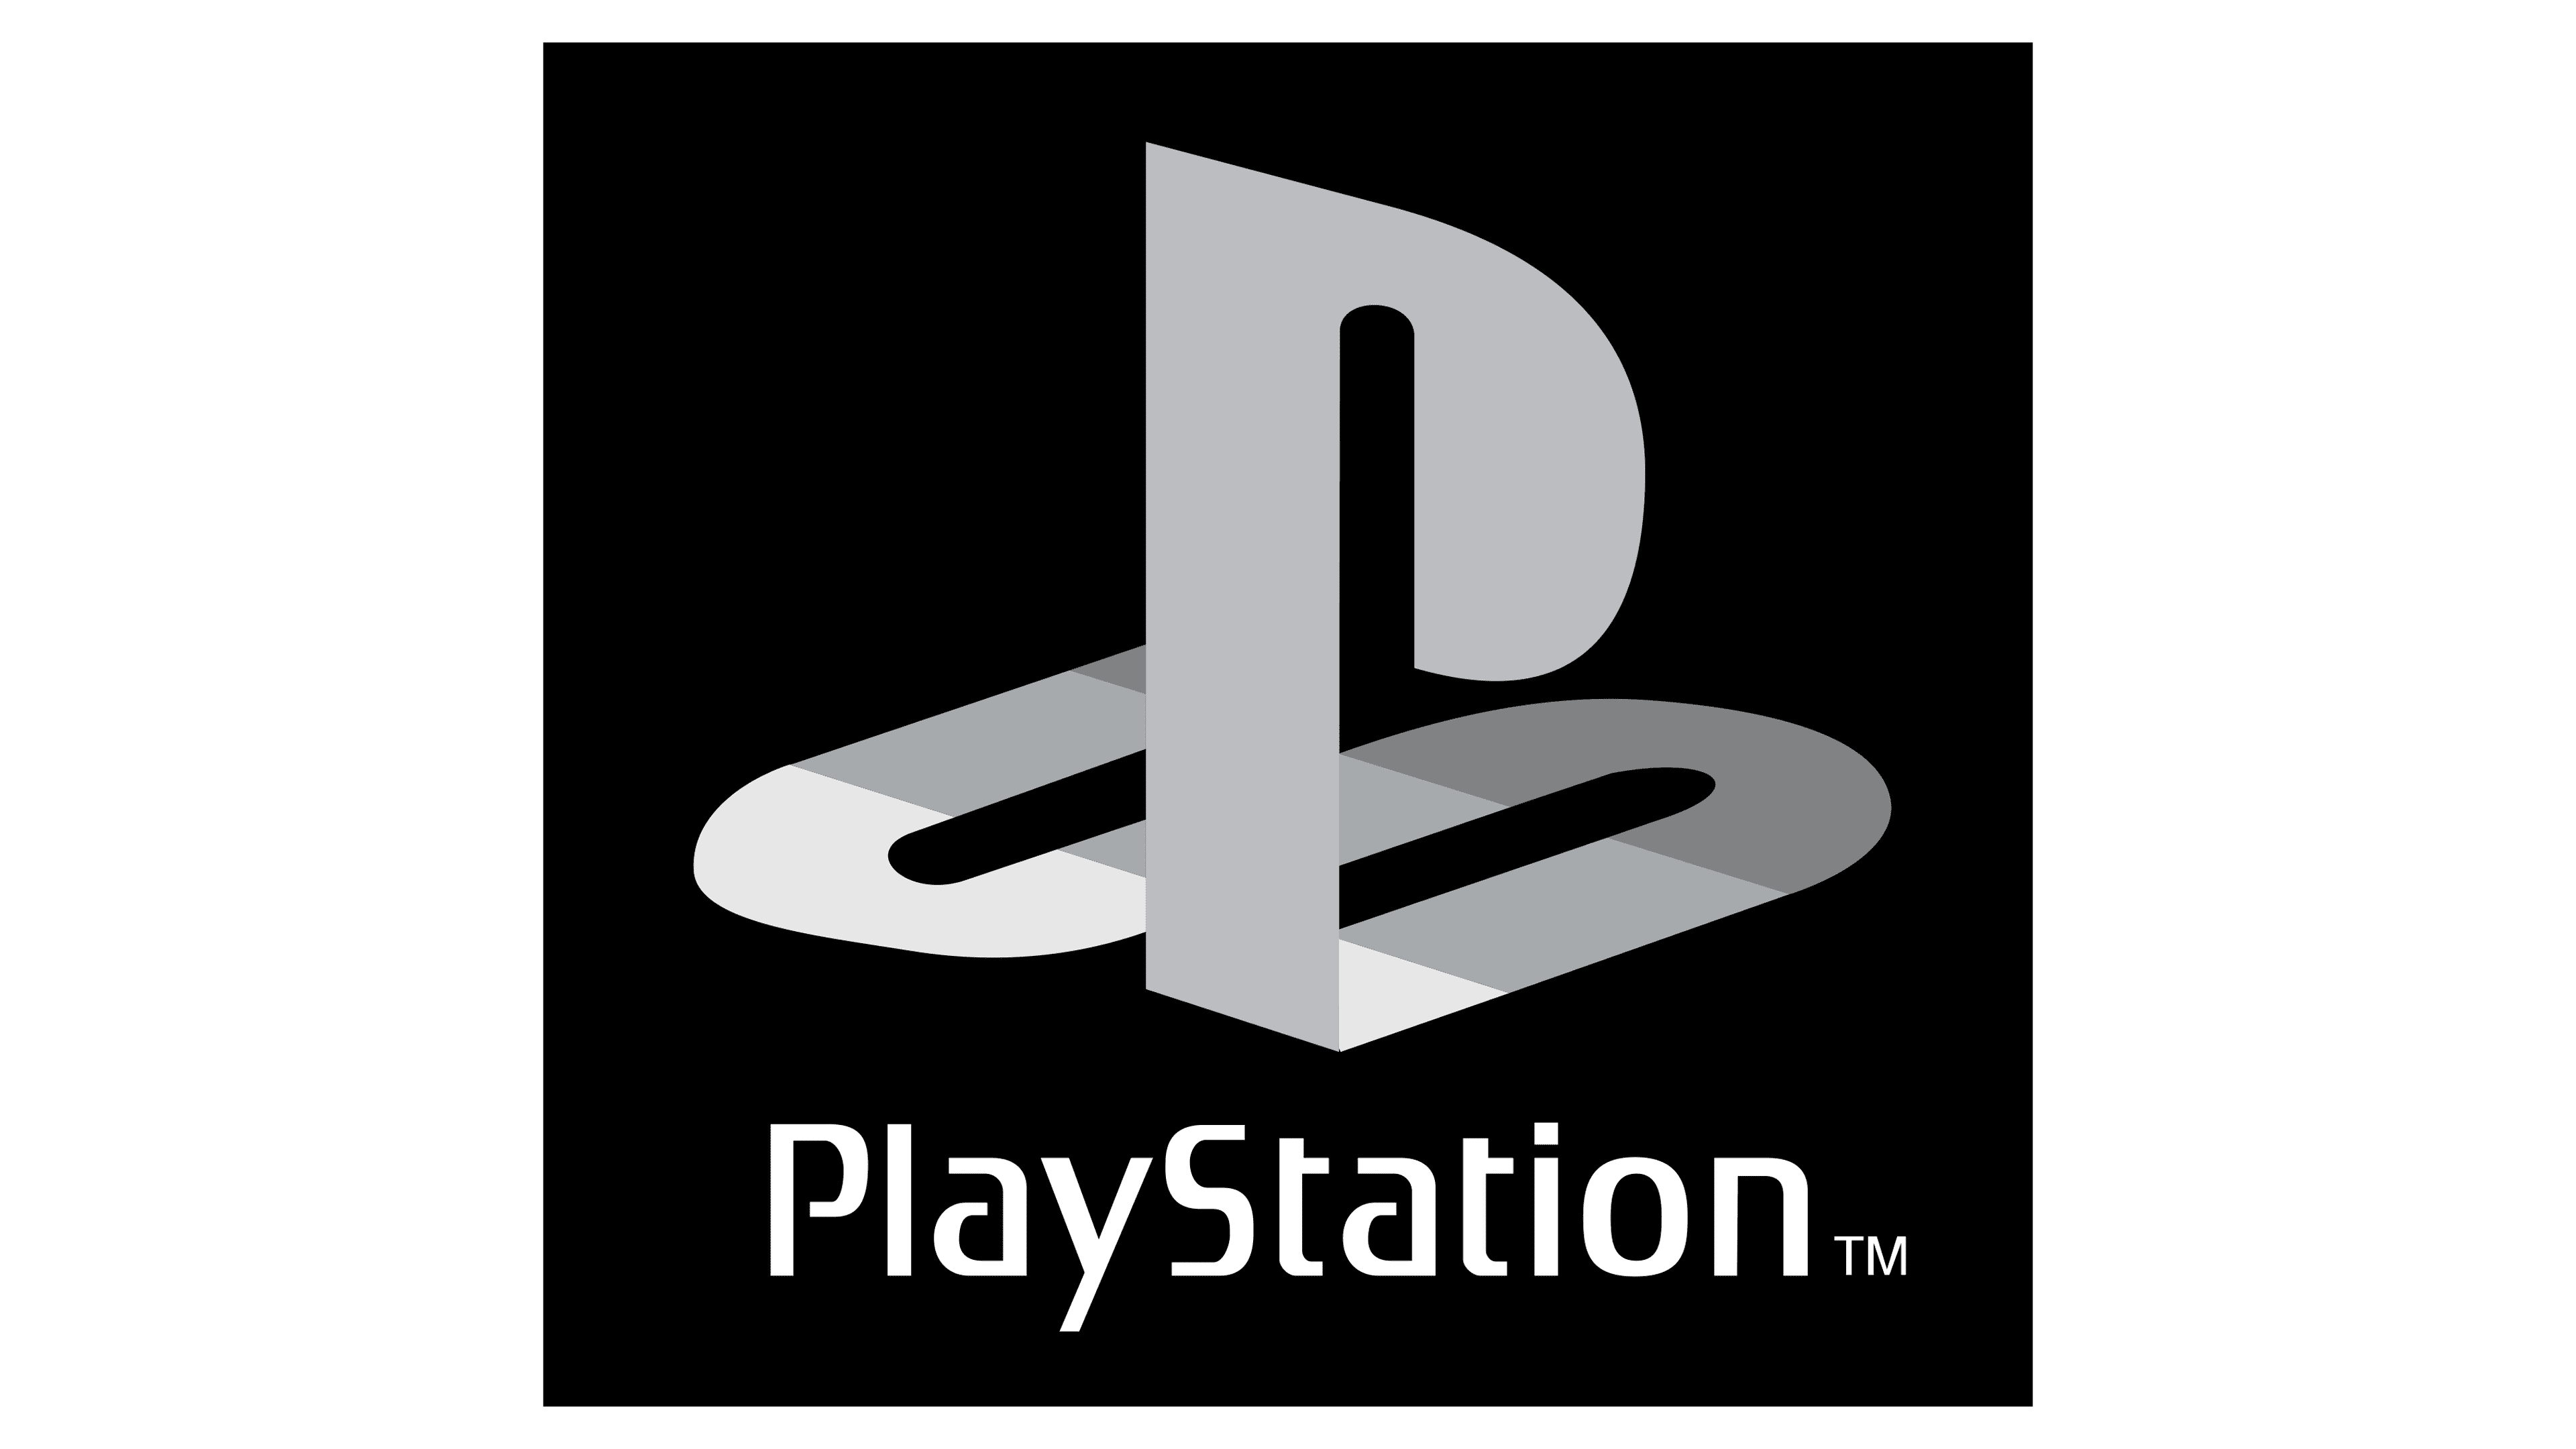 Ps na. Логотип Sony PLAYSTATION 1. Sony PLAYSTATION 4 logo. Надпись плейстейшен. Sony PLAYSTATION надпись.